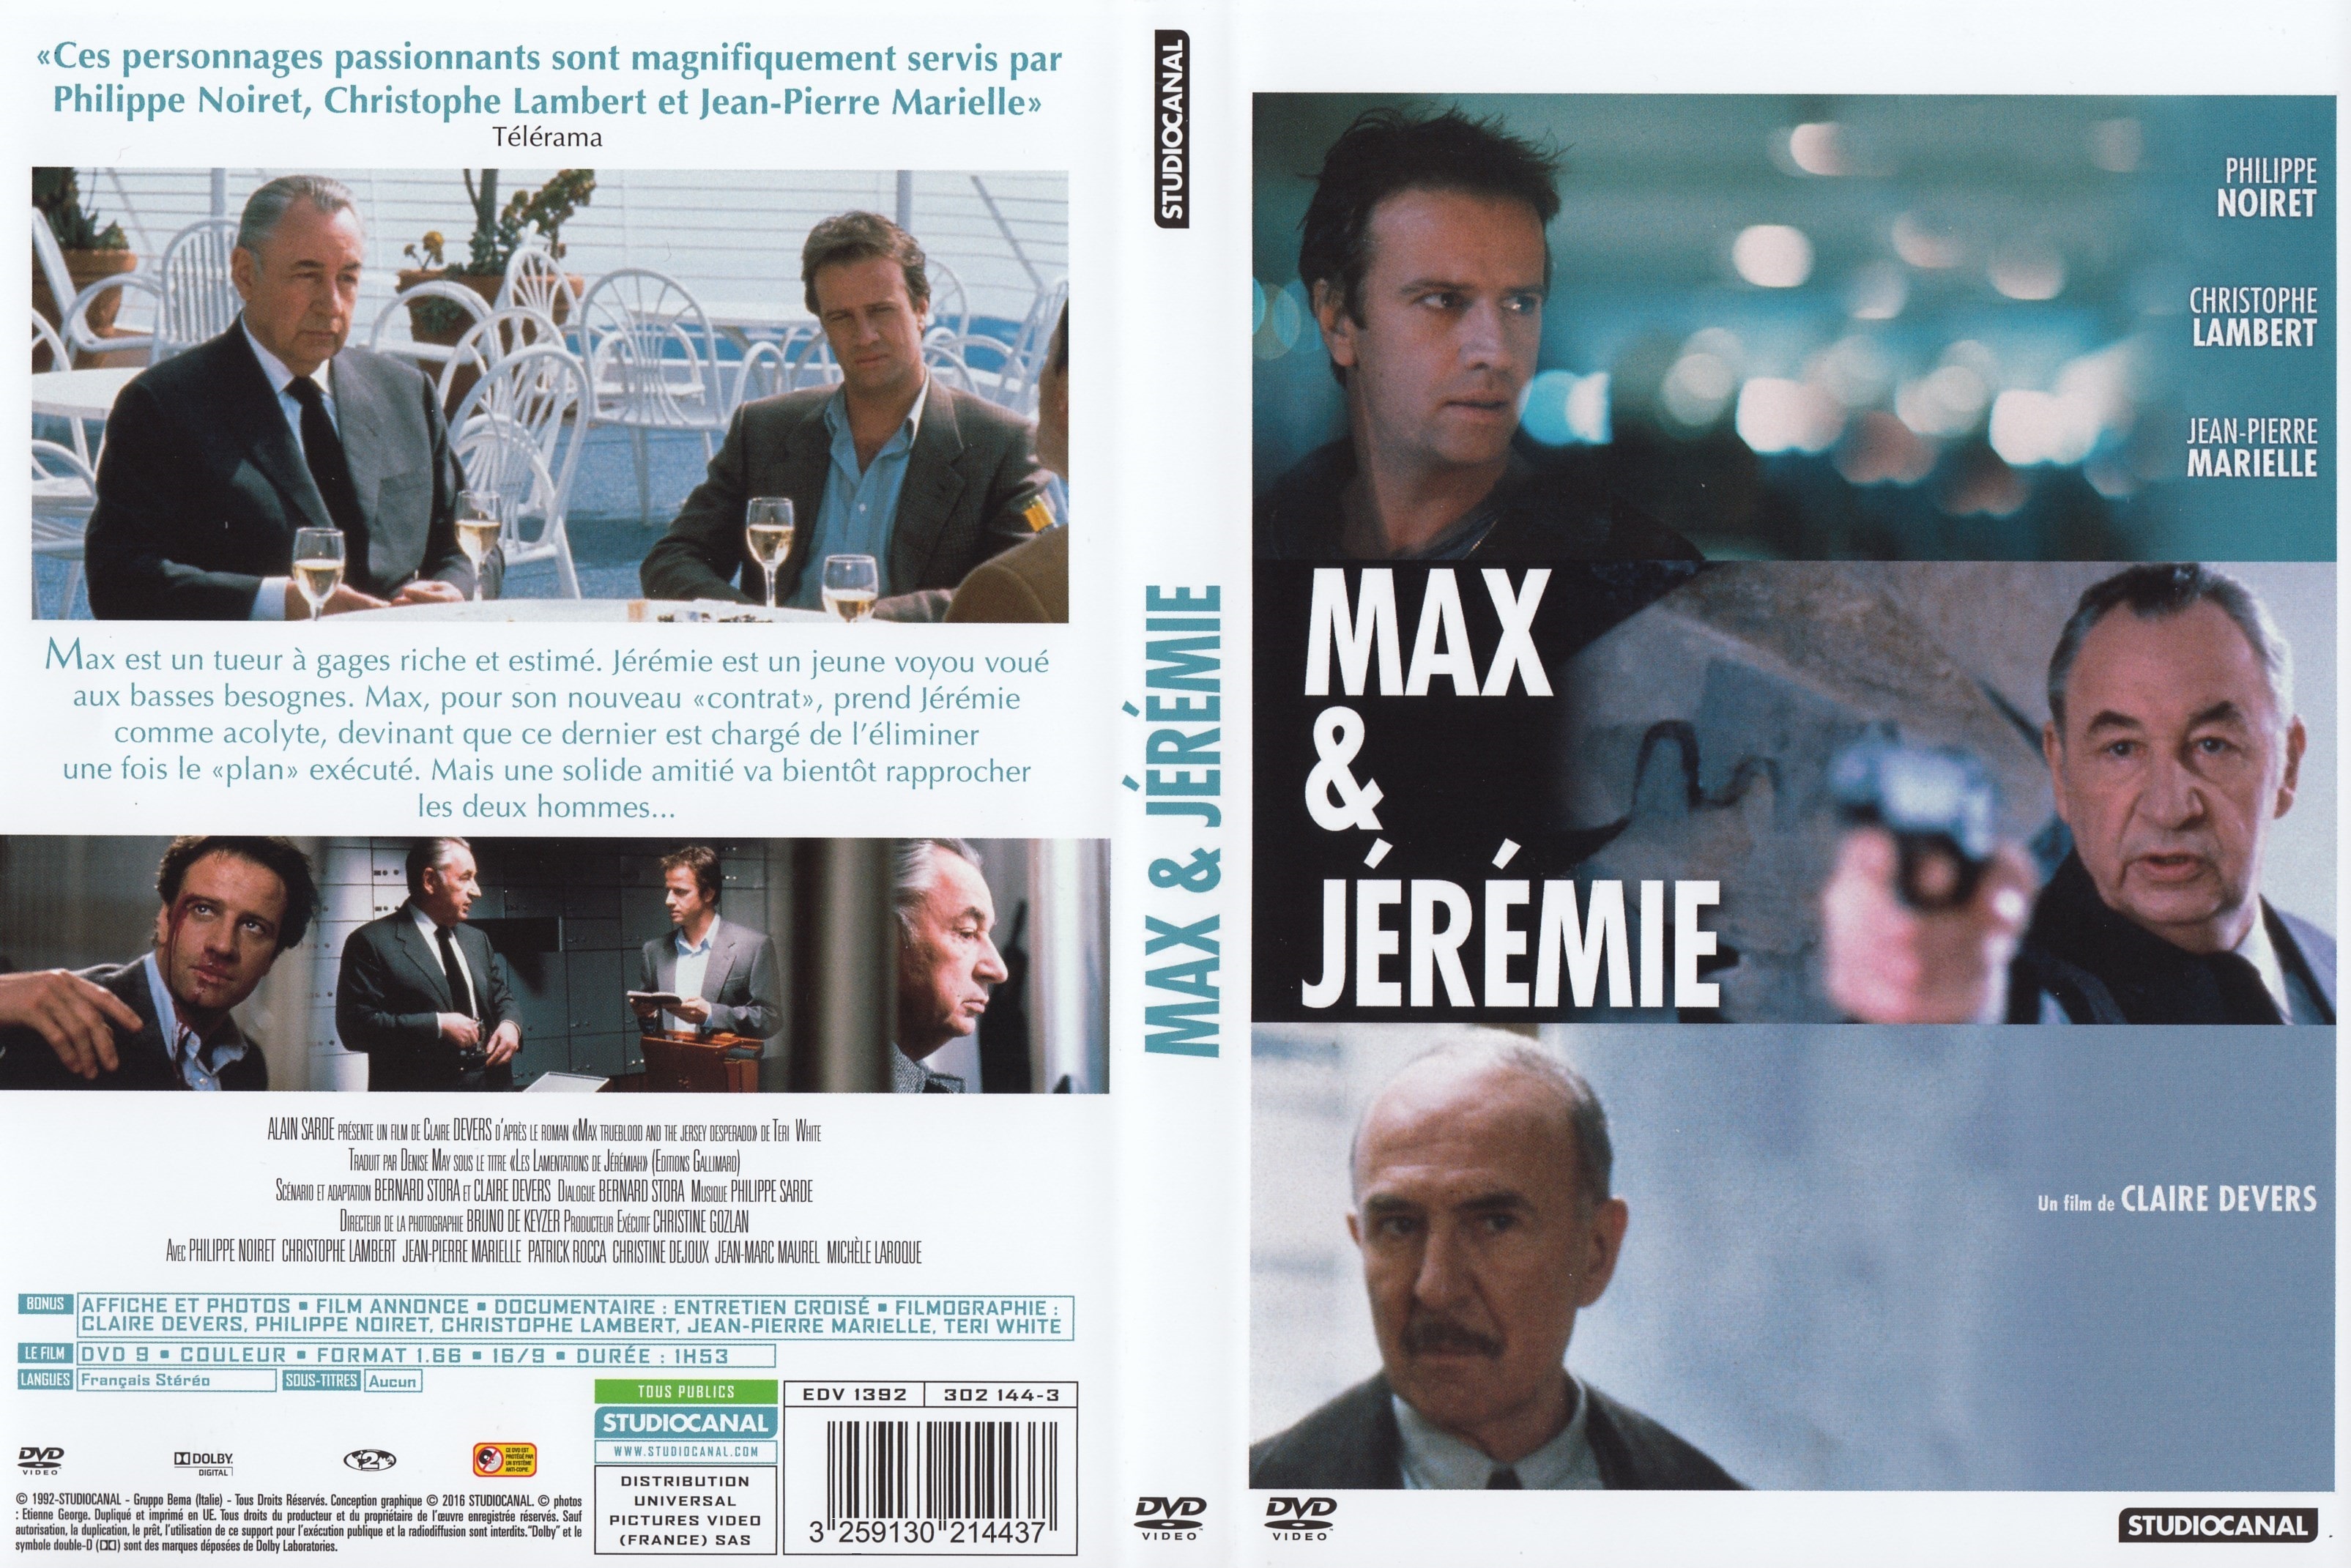 Jaquette DVD Max et Jrmie